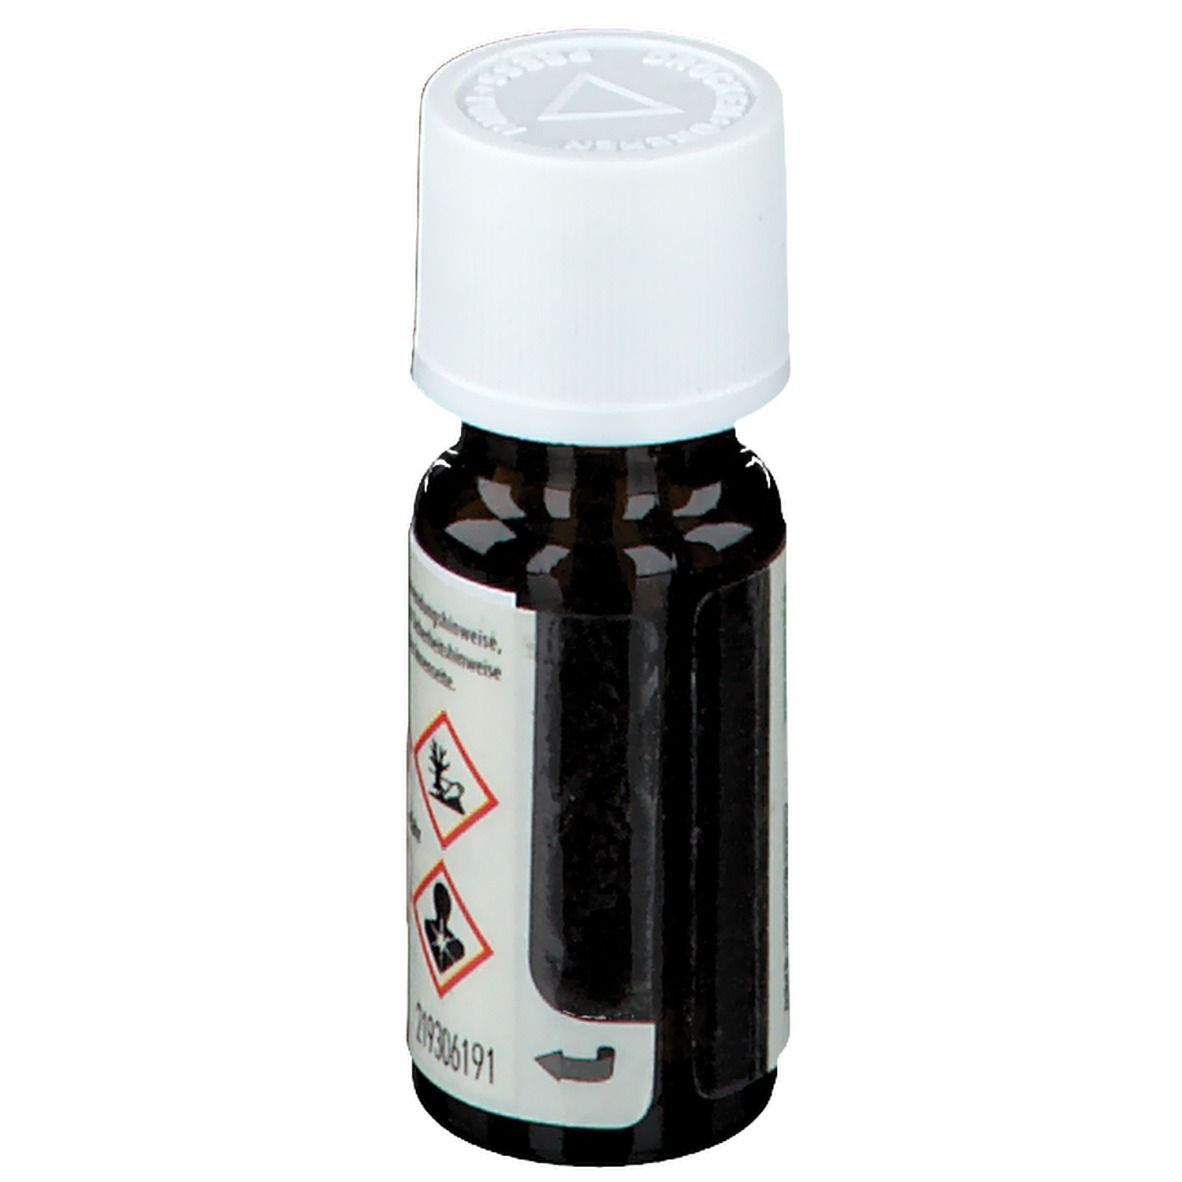 Spinnrad® Etherisches Öl Salbei 100 % naturrein